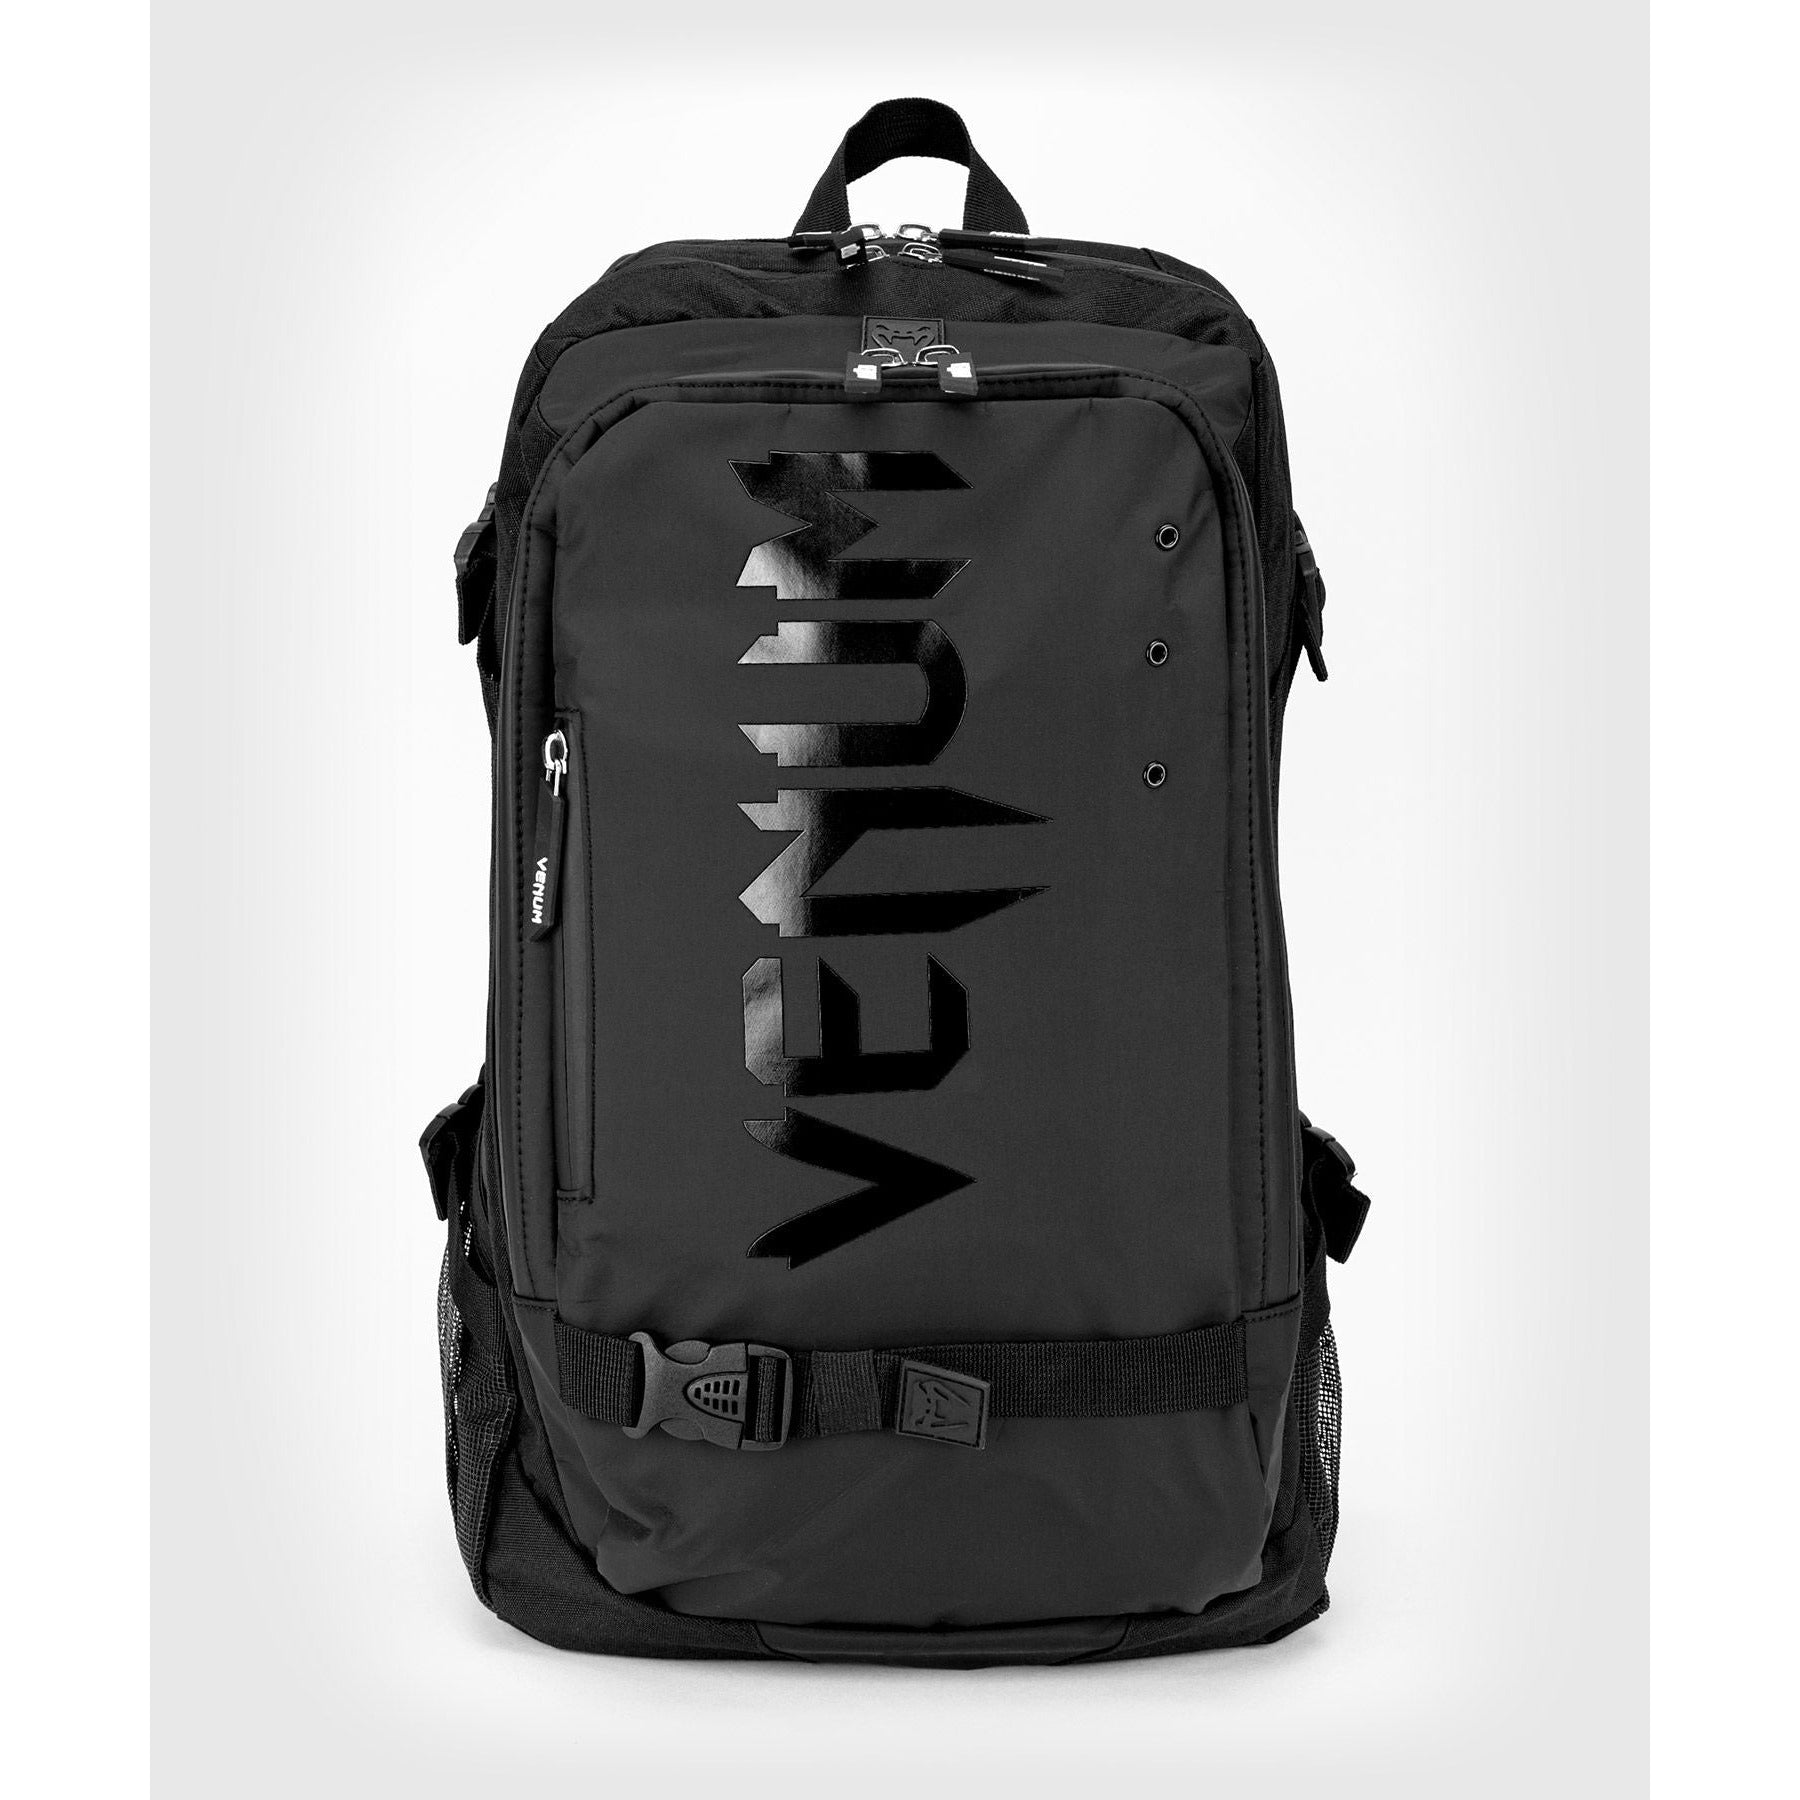 Venum Challenger Pro Evo Backpack - Black/Black